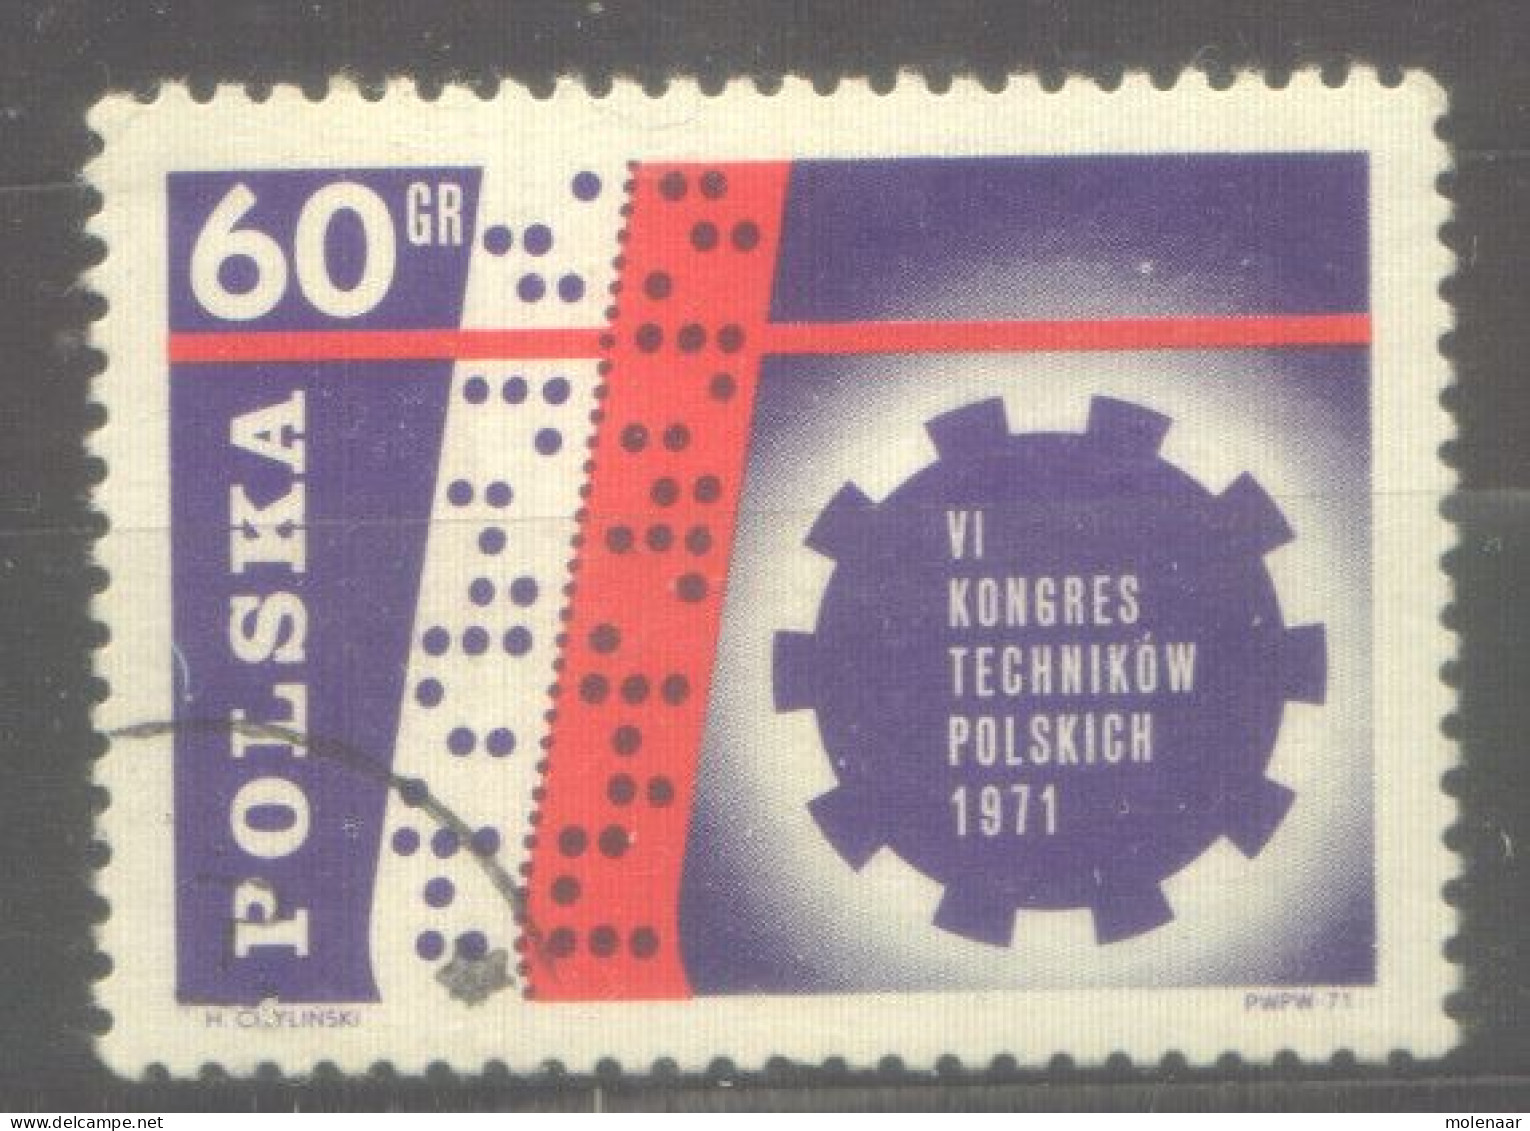 Postzegels > Europa > Polen > 1944-.... Republiek > 1971-80 > Gebruikt 2097 (12057) - Oblitérés